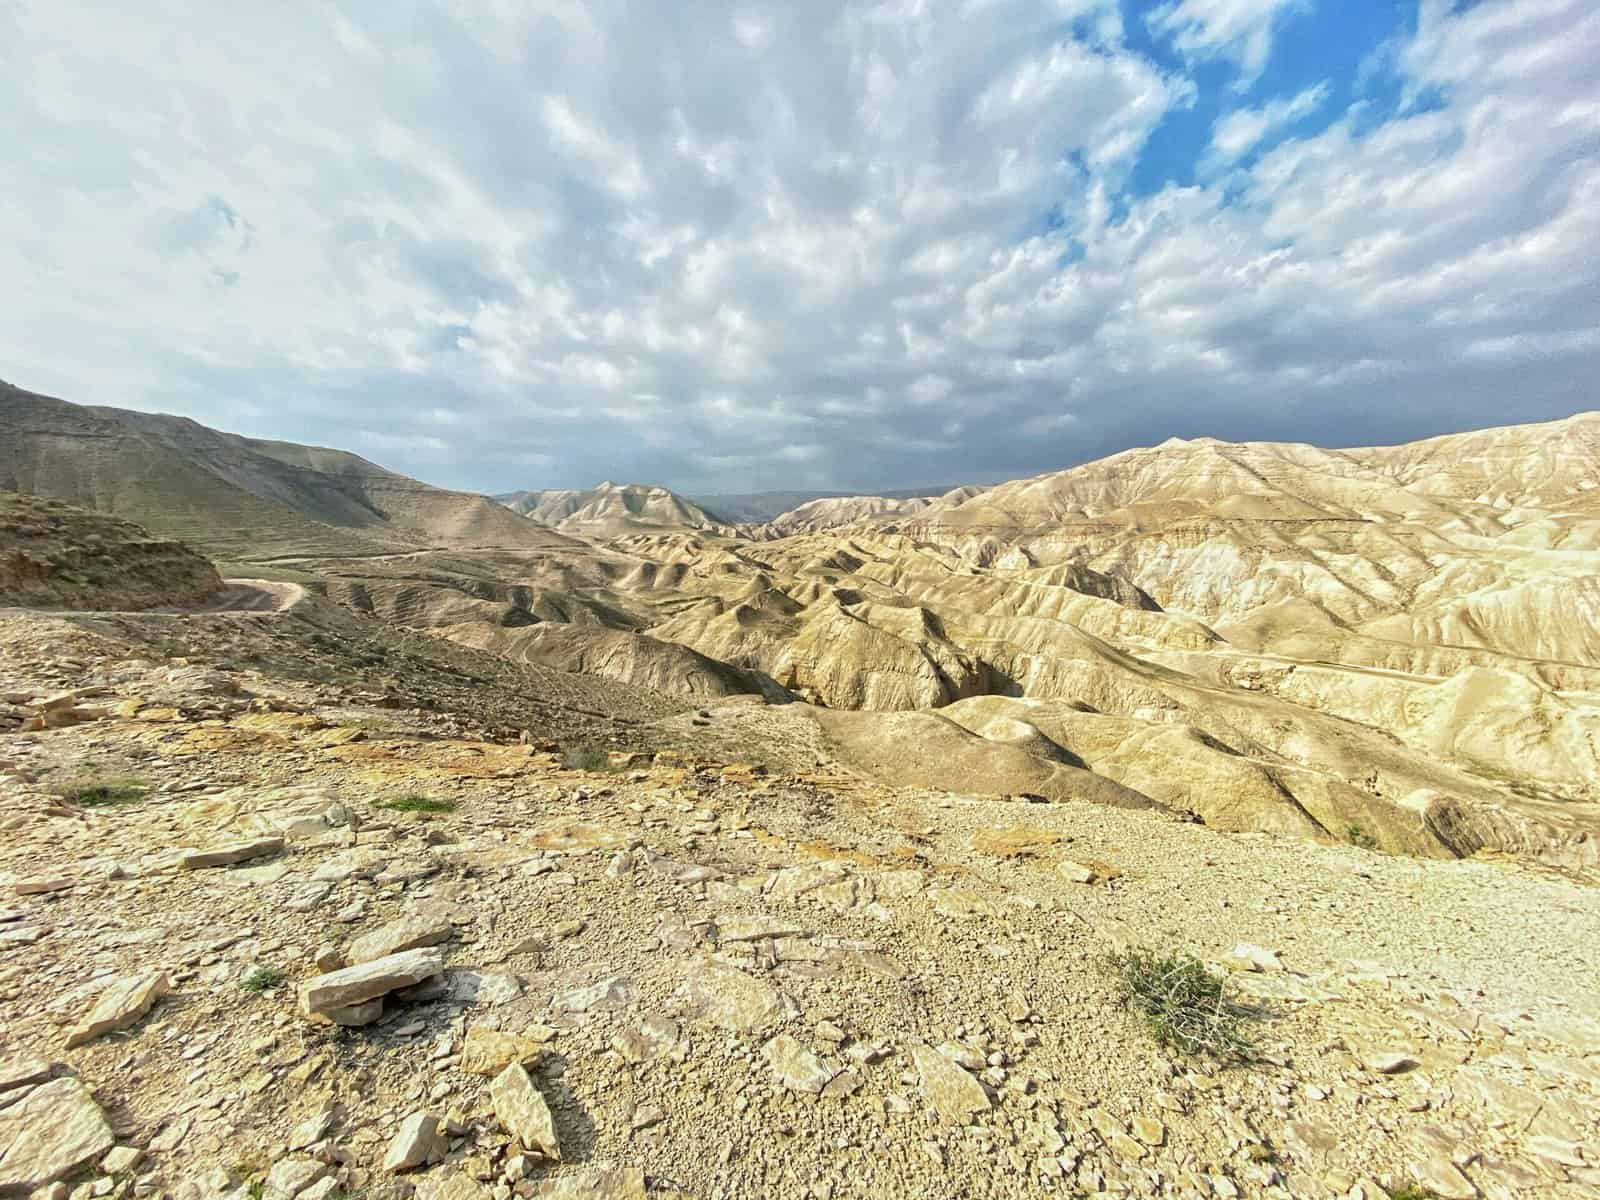 An image of the Judean Desert